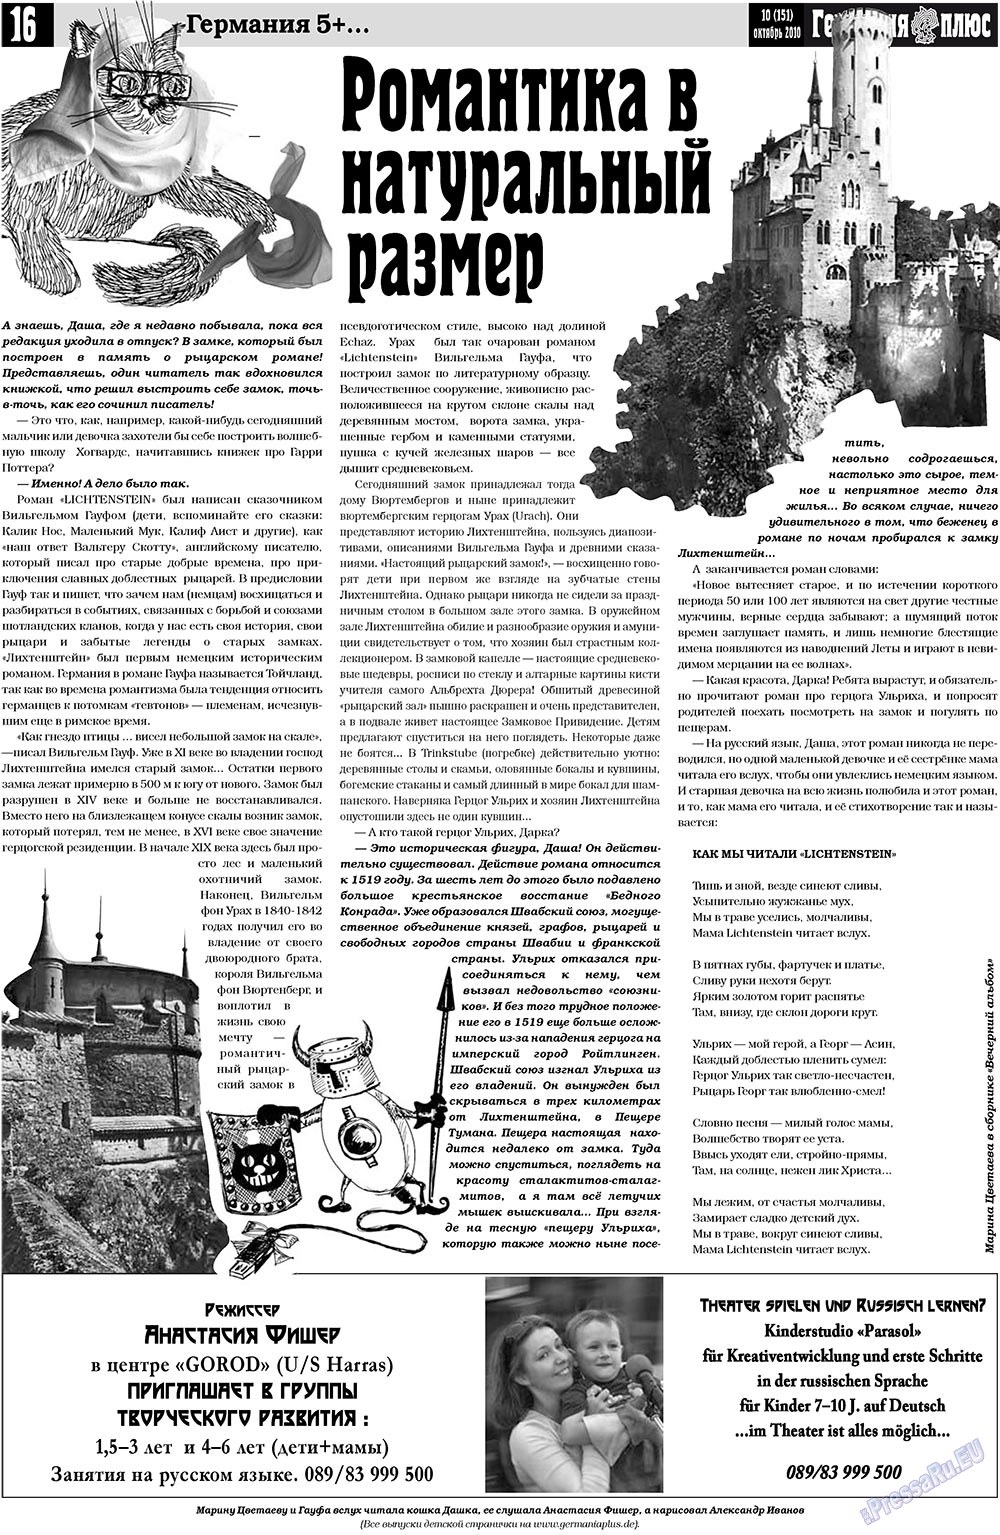 Германия плюс (газета). 2010 год, номер 10, стр. 16